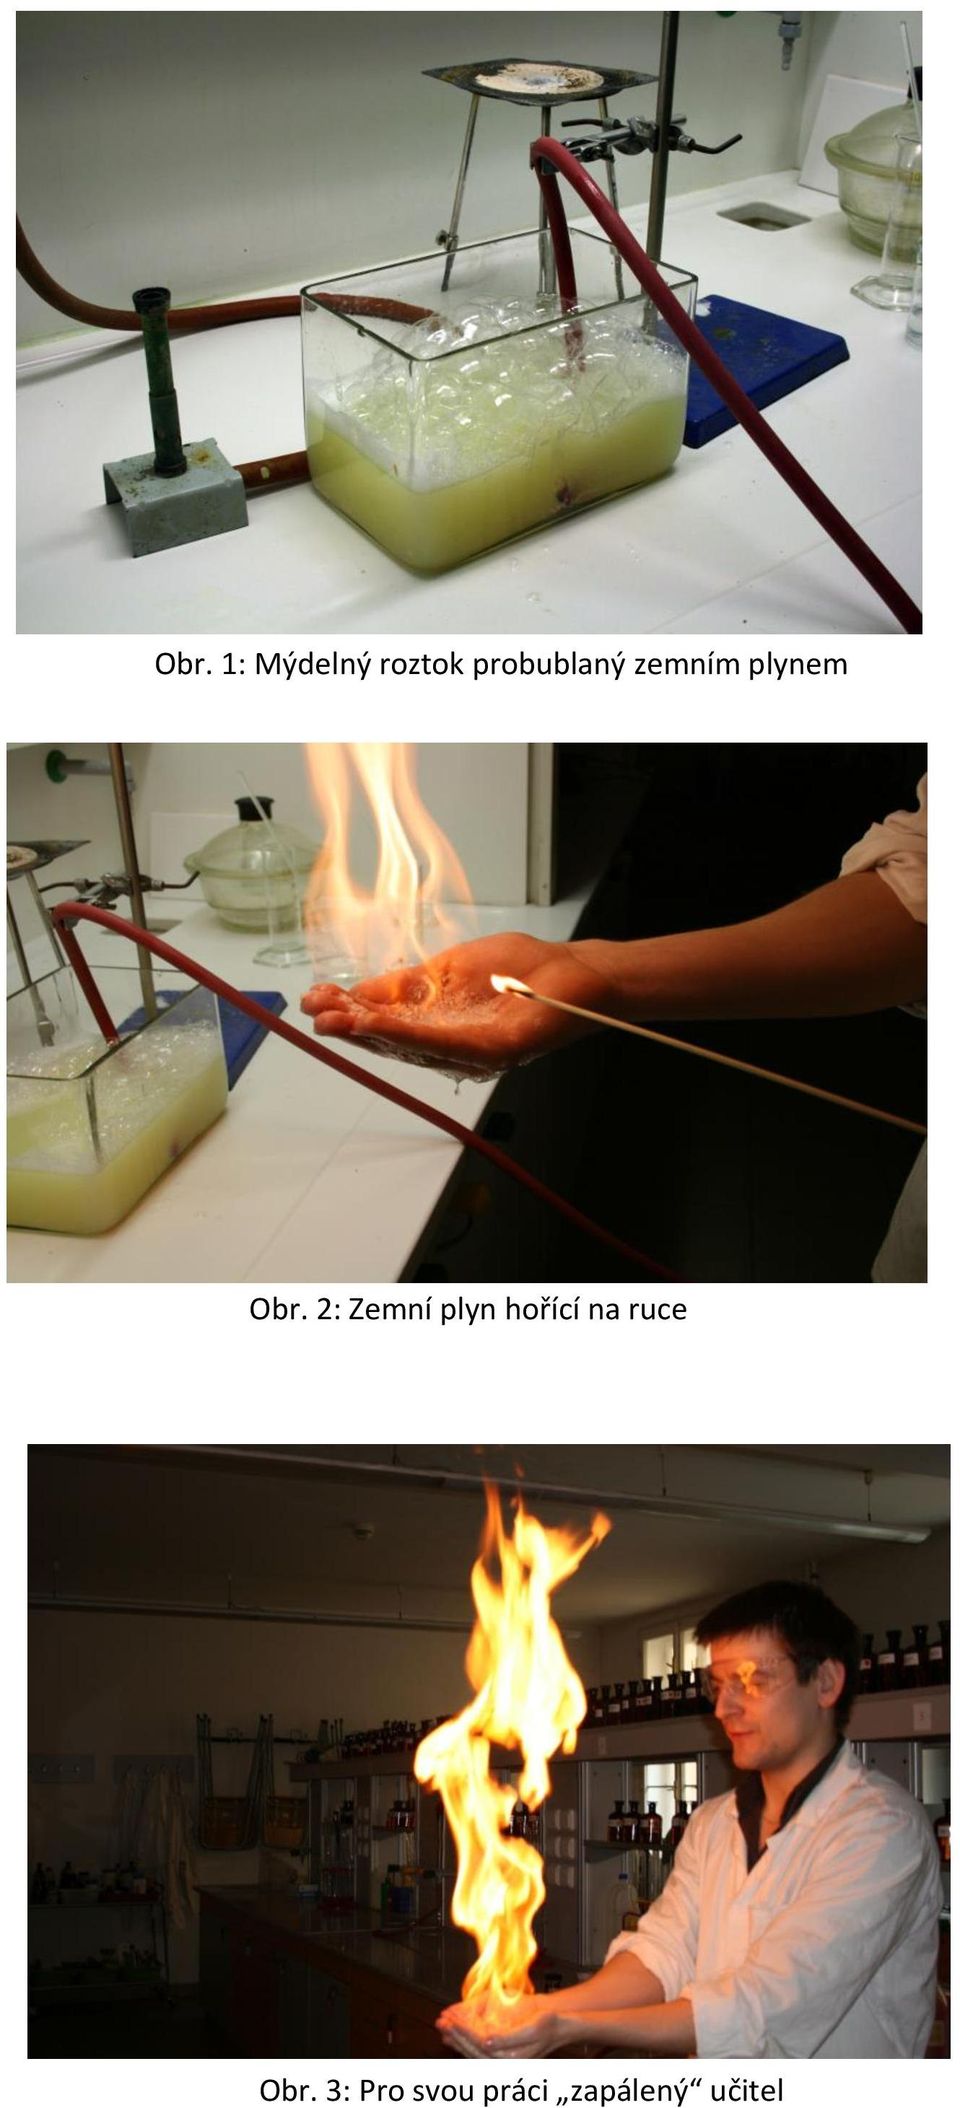 2: Zemní plyn hořící na ruce